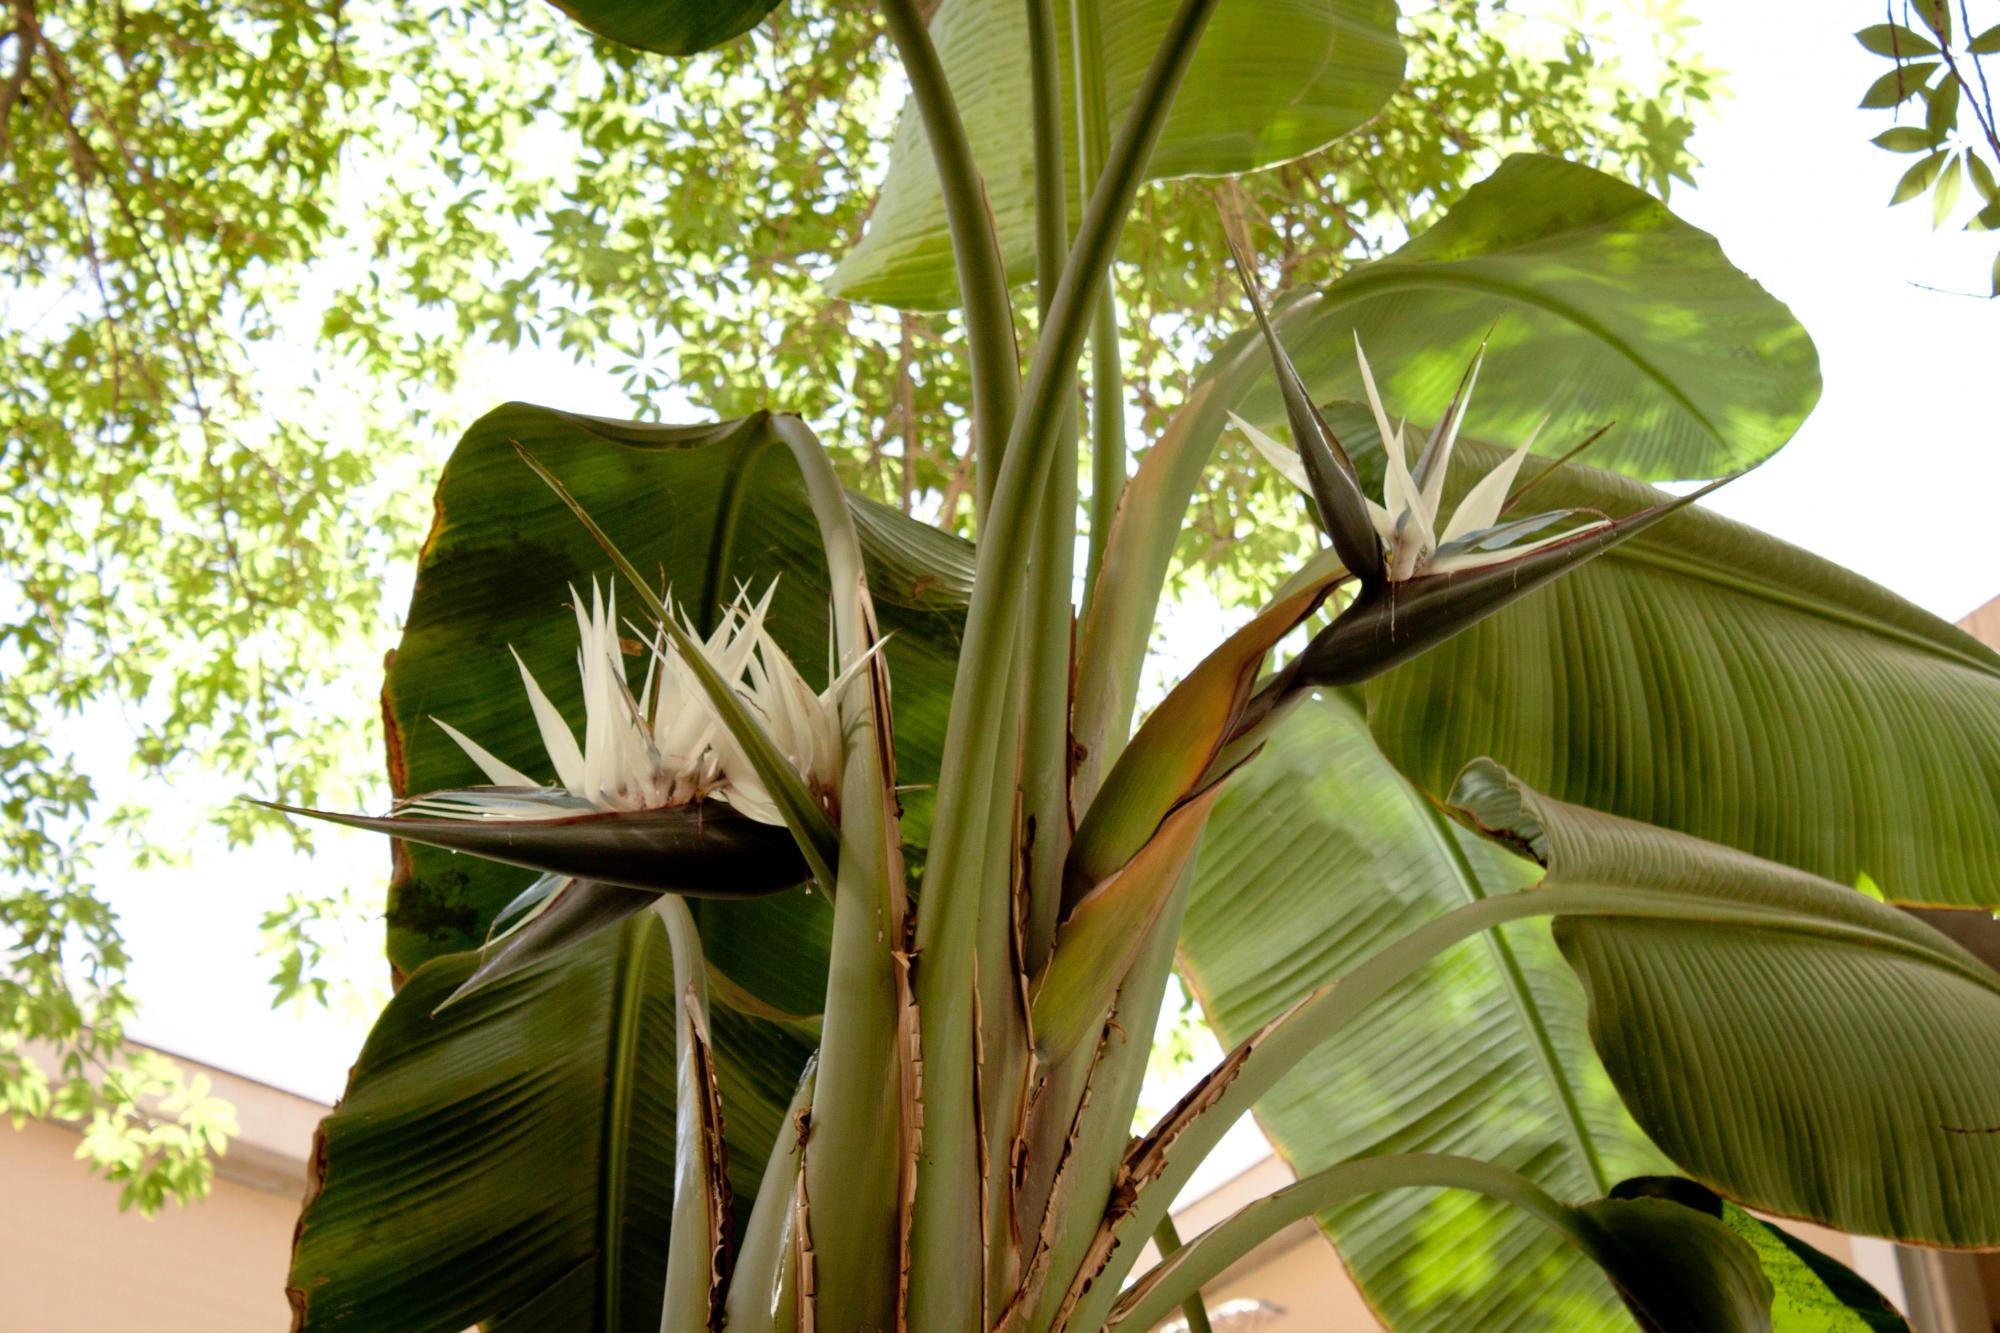 Strelitziaceae image